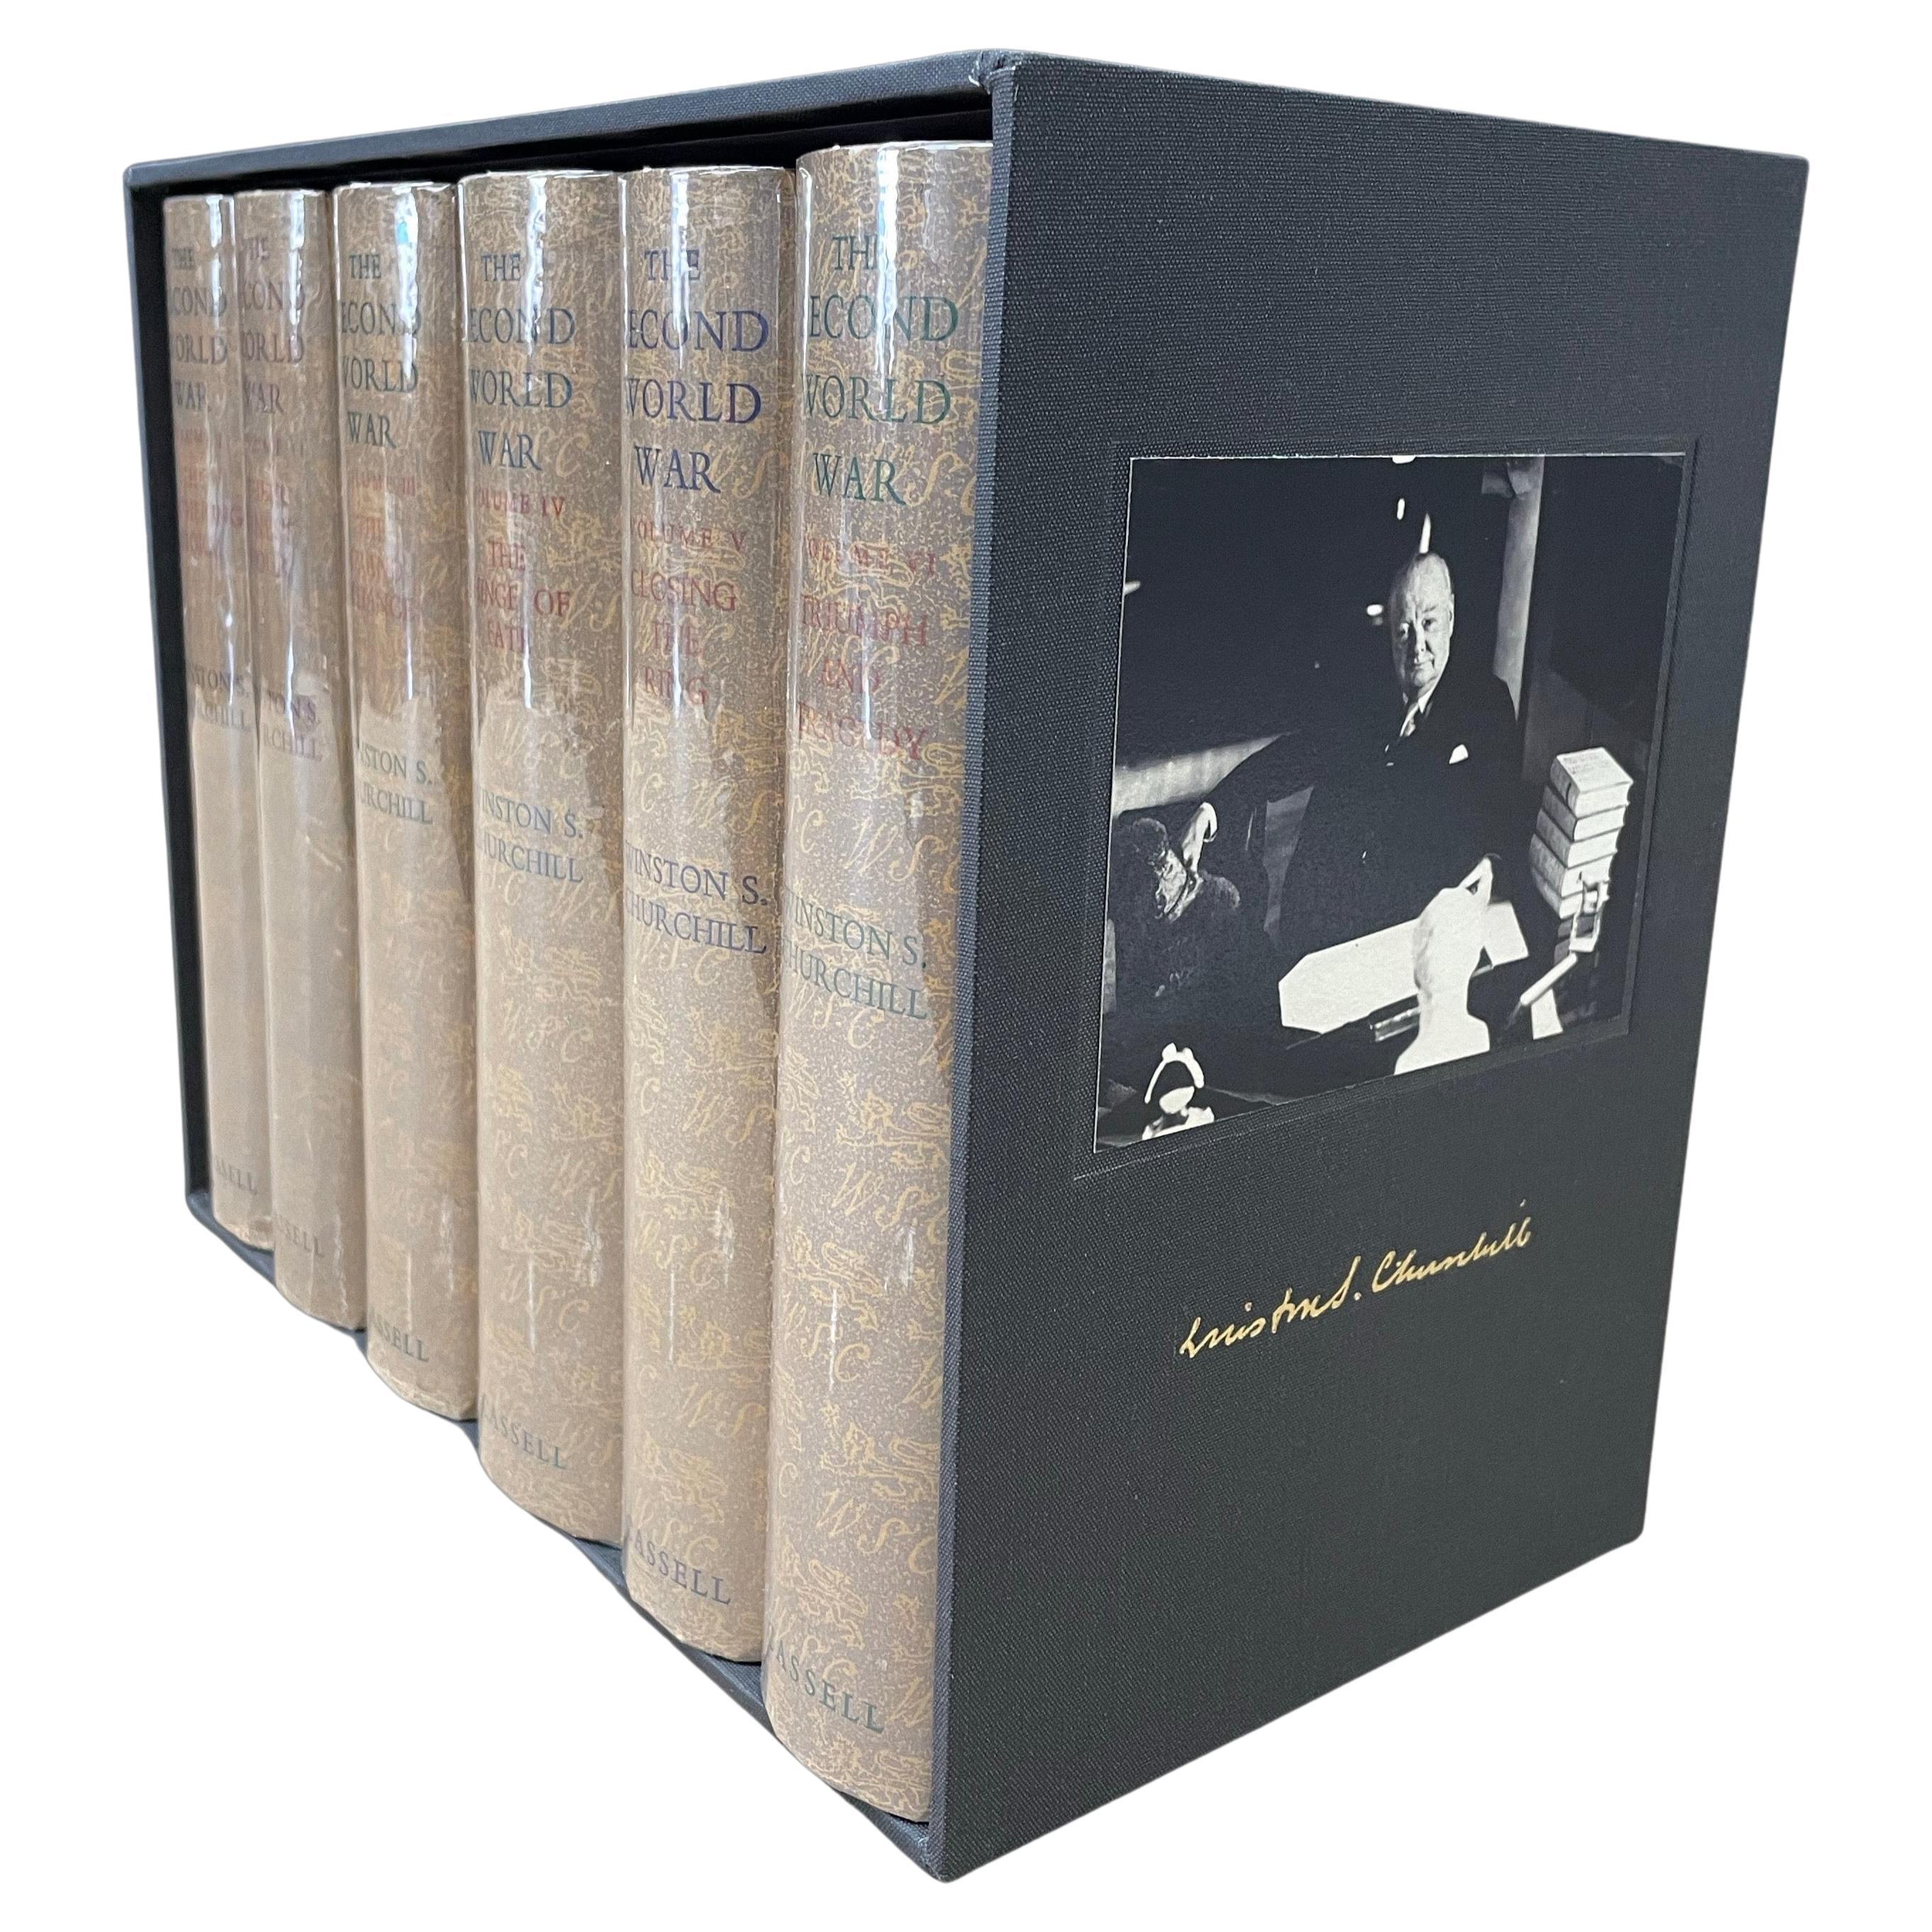 Der Zweite Weltkrieg von Winston Churchill, Erstausgabe, Original Aufbewahrungsbeutel